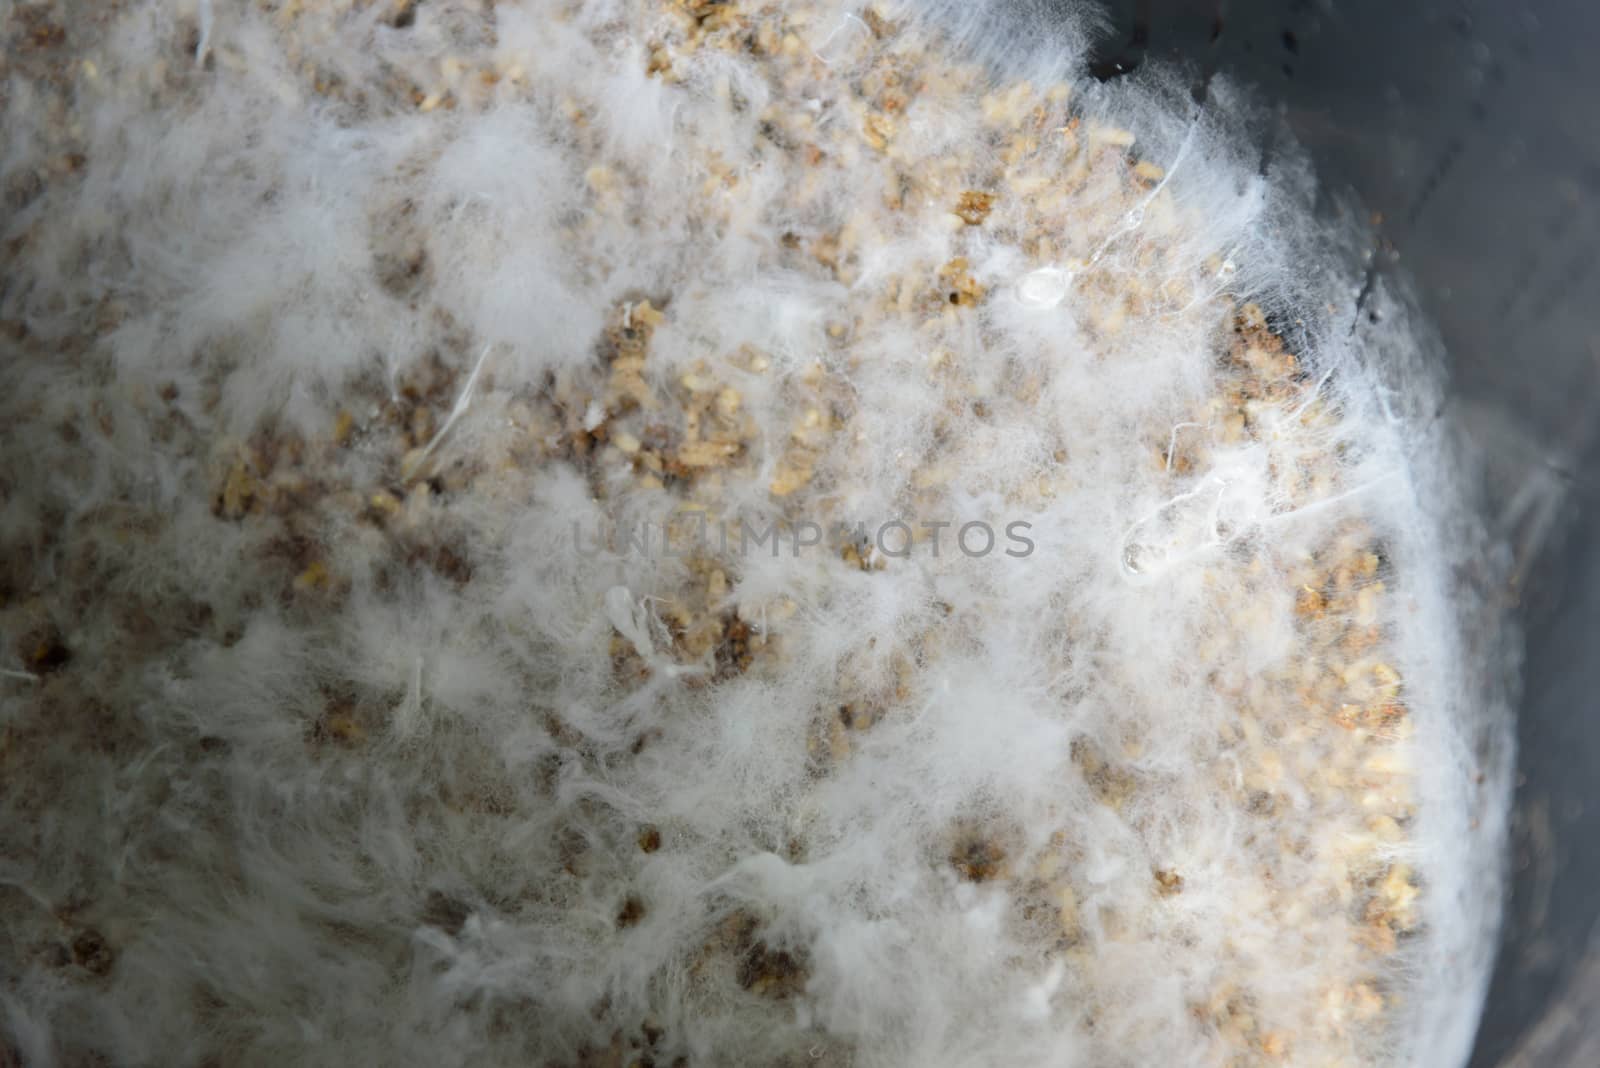 Closeup to Fungi microorganism Termites in the Bin by rukawajung